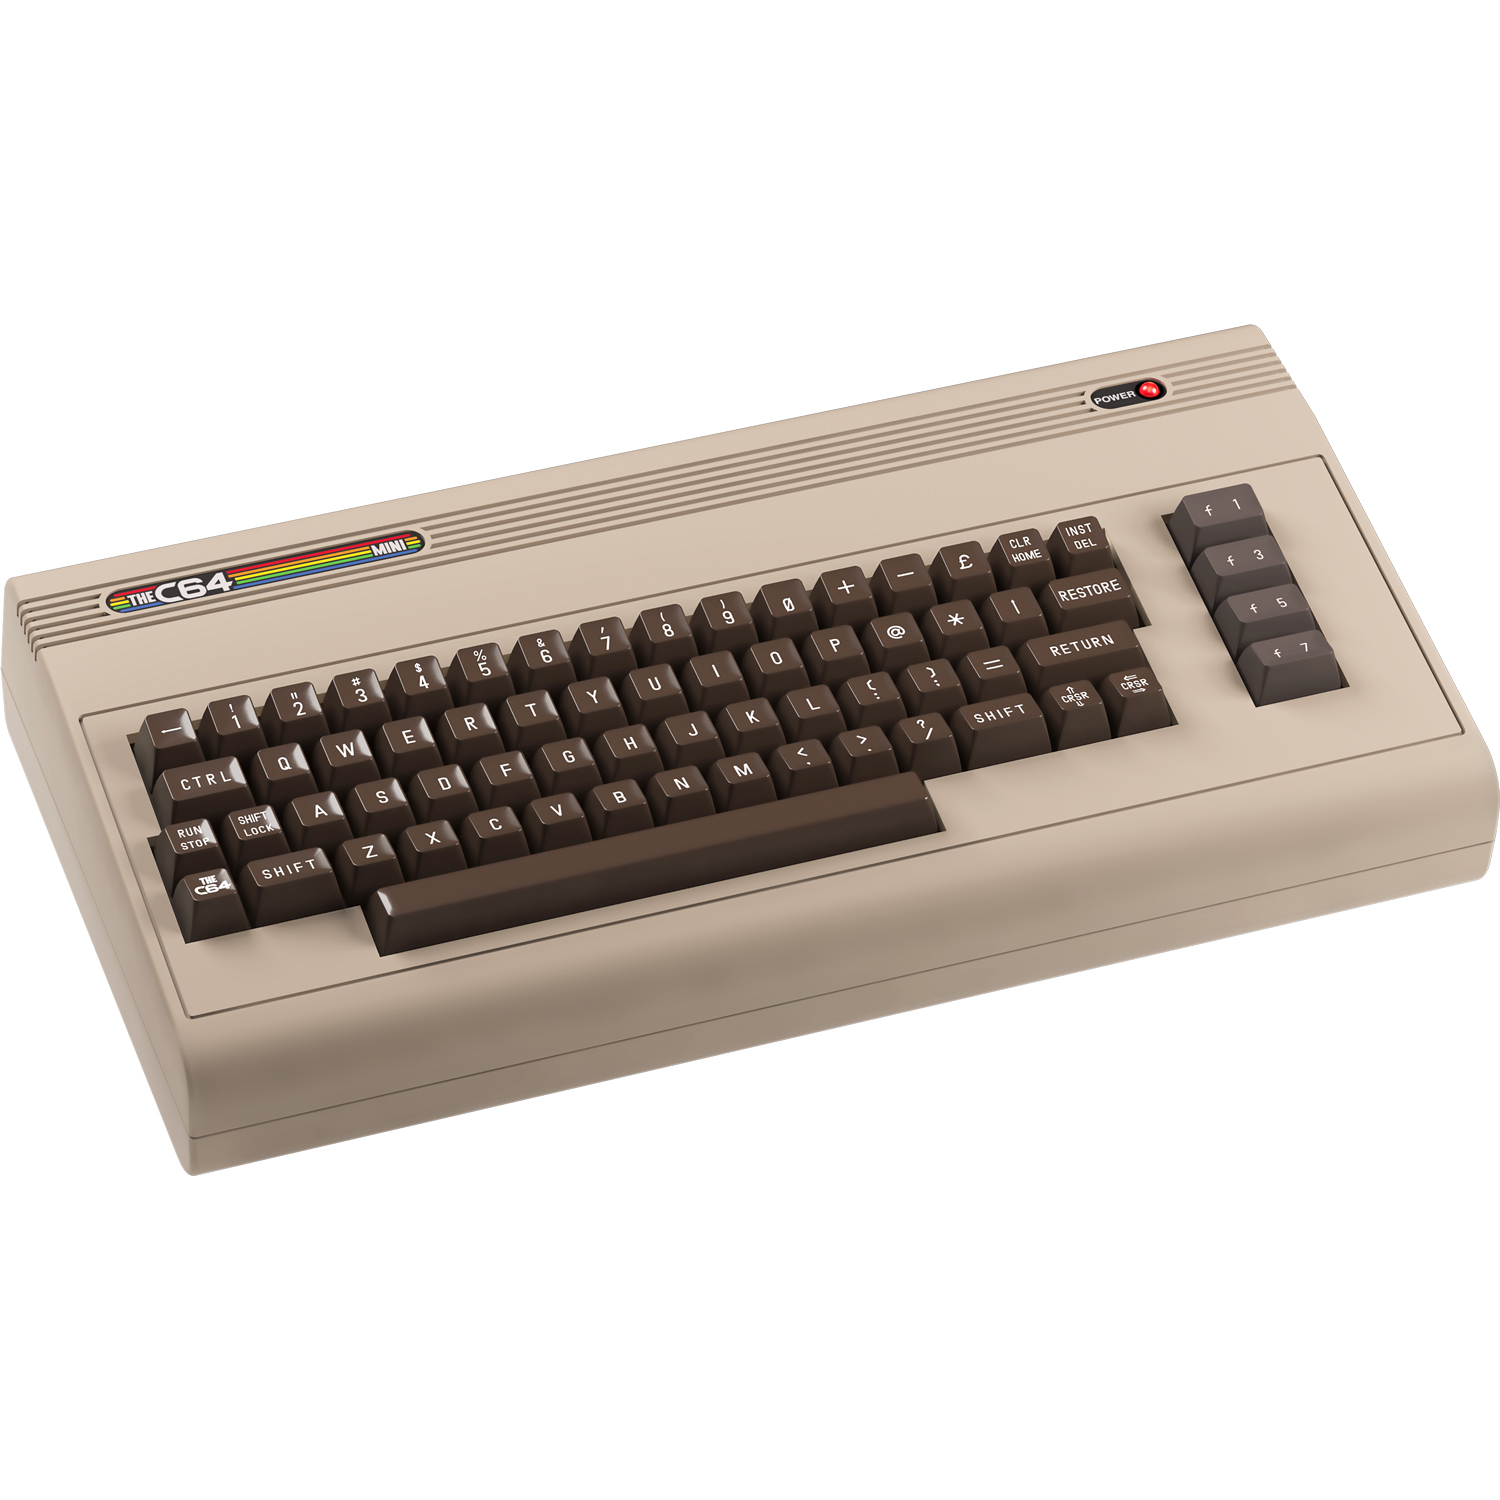 Retro Games LTD, THEC64 Mini Computer, Gray - image 3 of 13